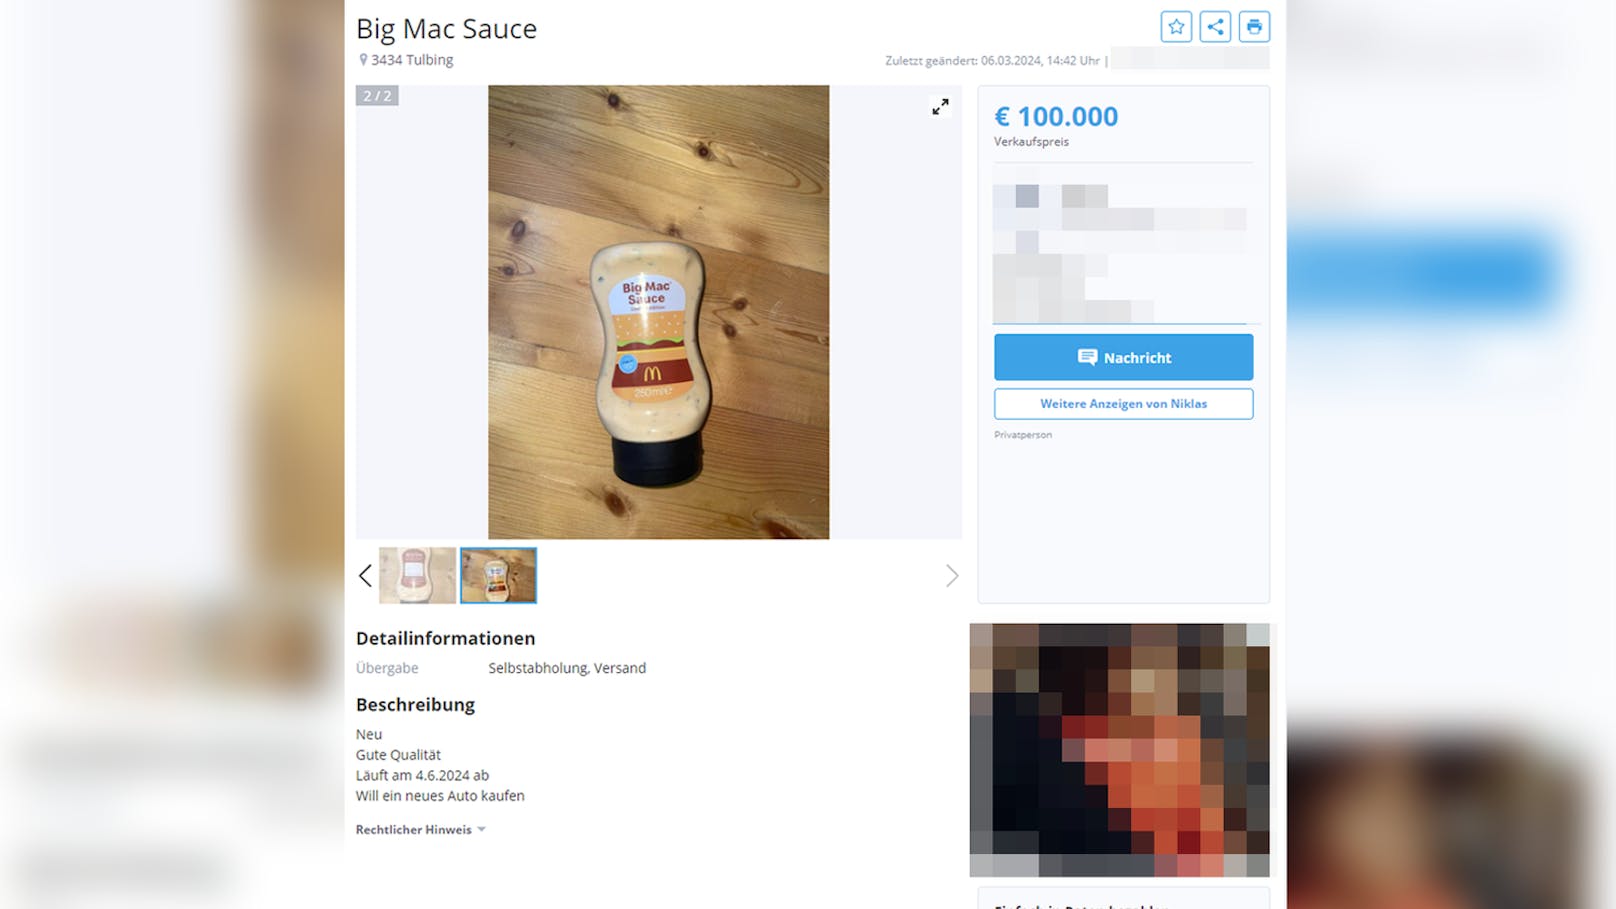 Autowunsch – Sauce soll für 100.000 € verkauft werden